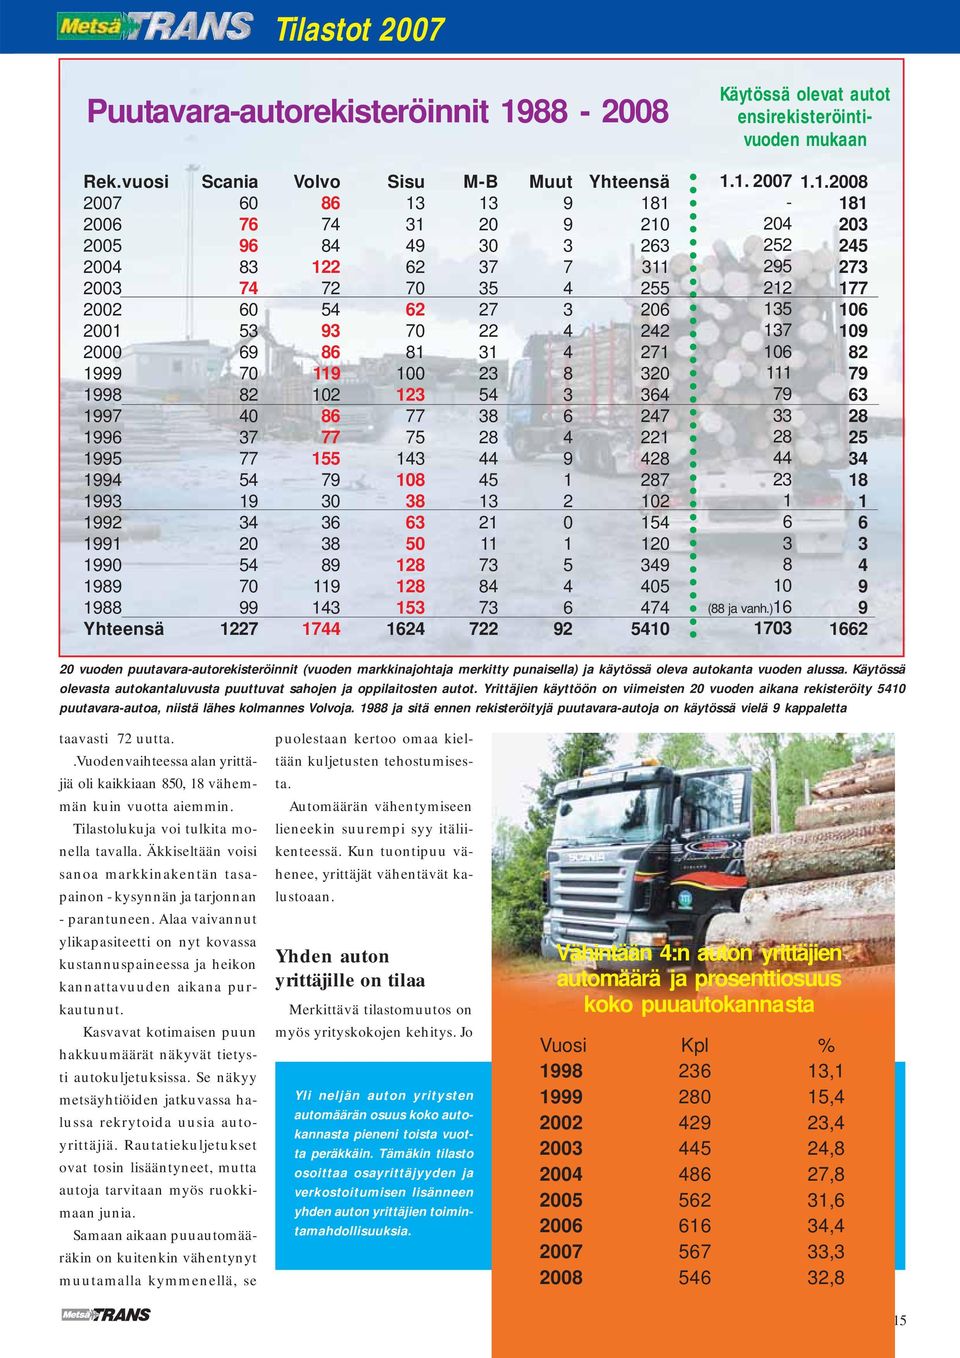 .00 0 0 0 0 vuoden puutavaraautorekisteröinnit (vuoden markkinajohtaja merkitty punaisella) ja käytössä oleva autokanta vuoden alussa.